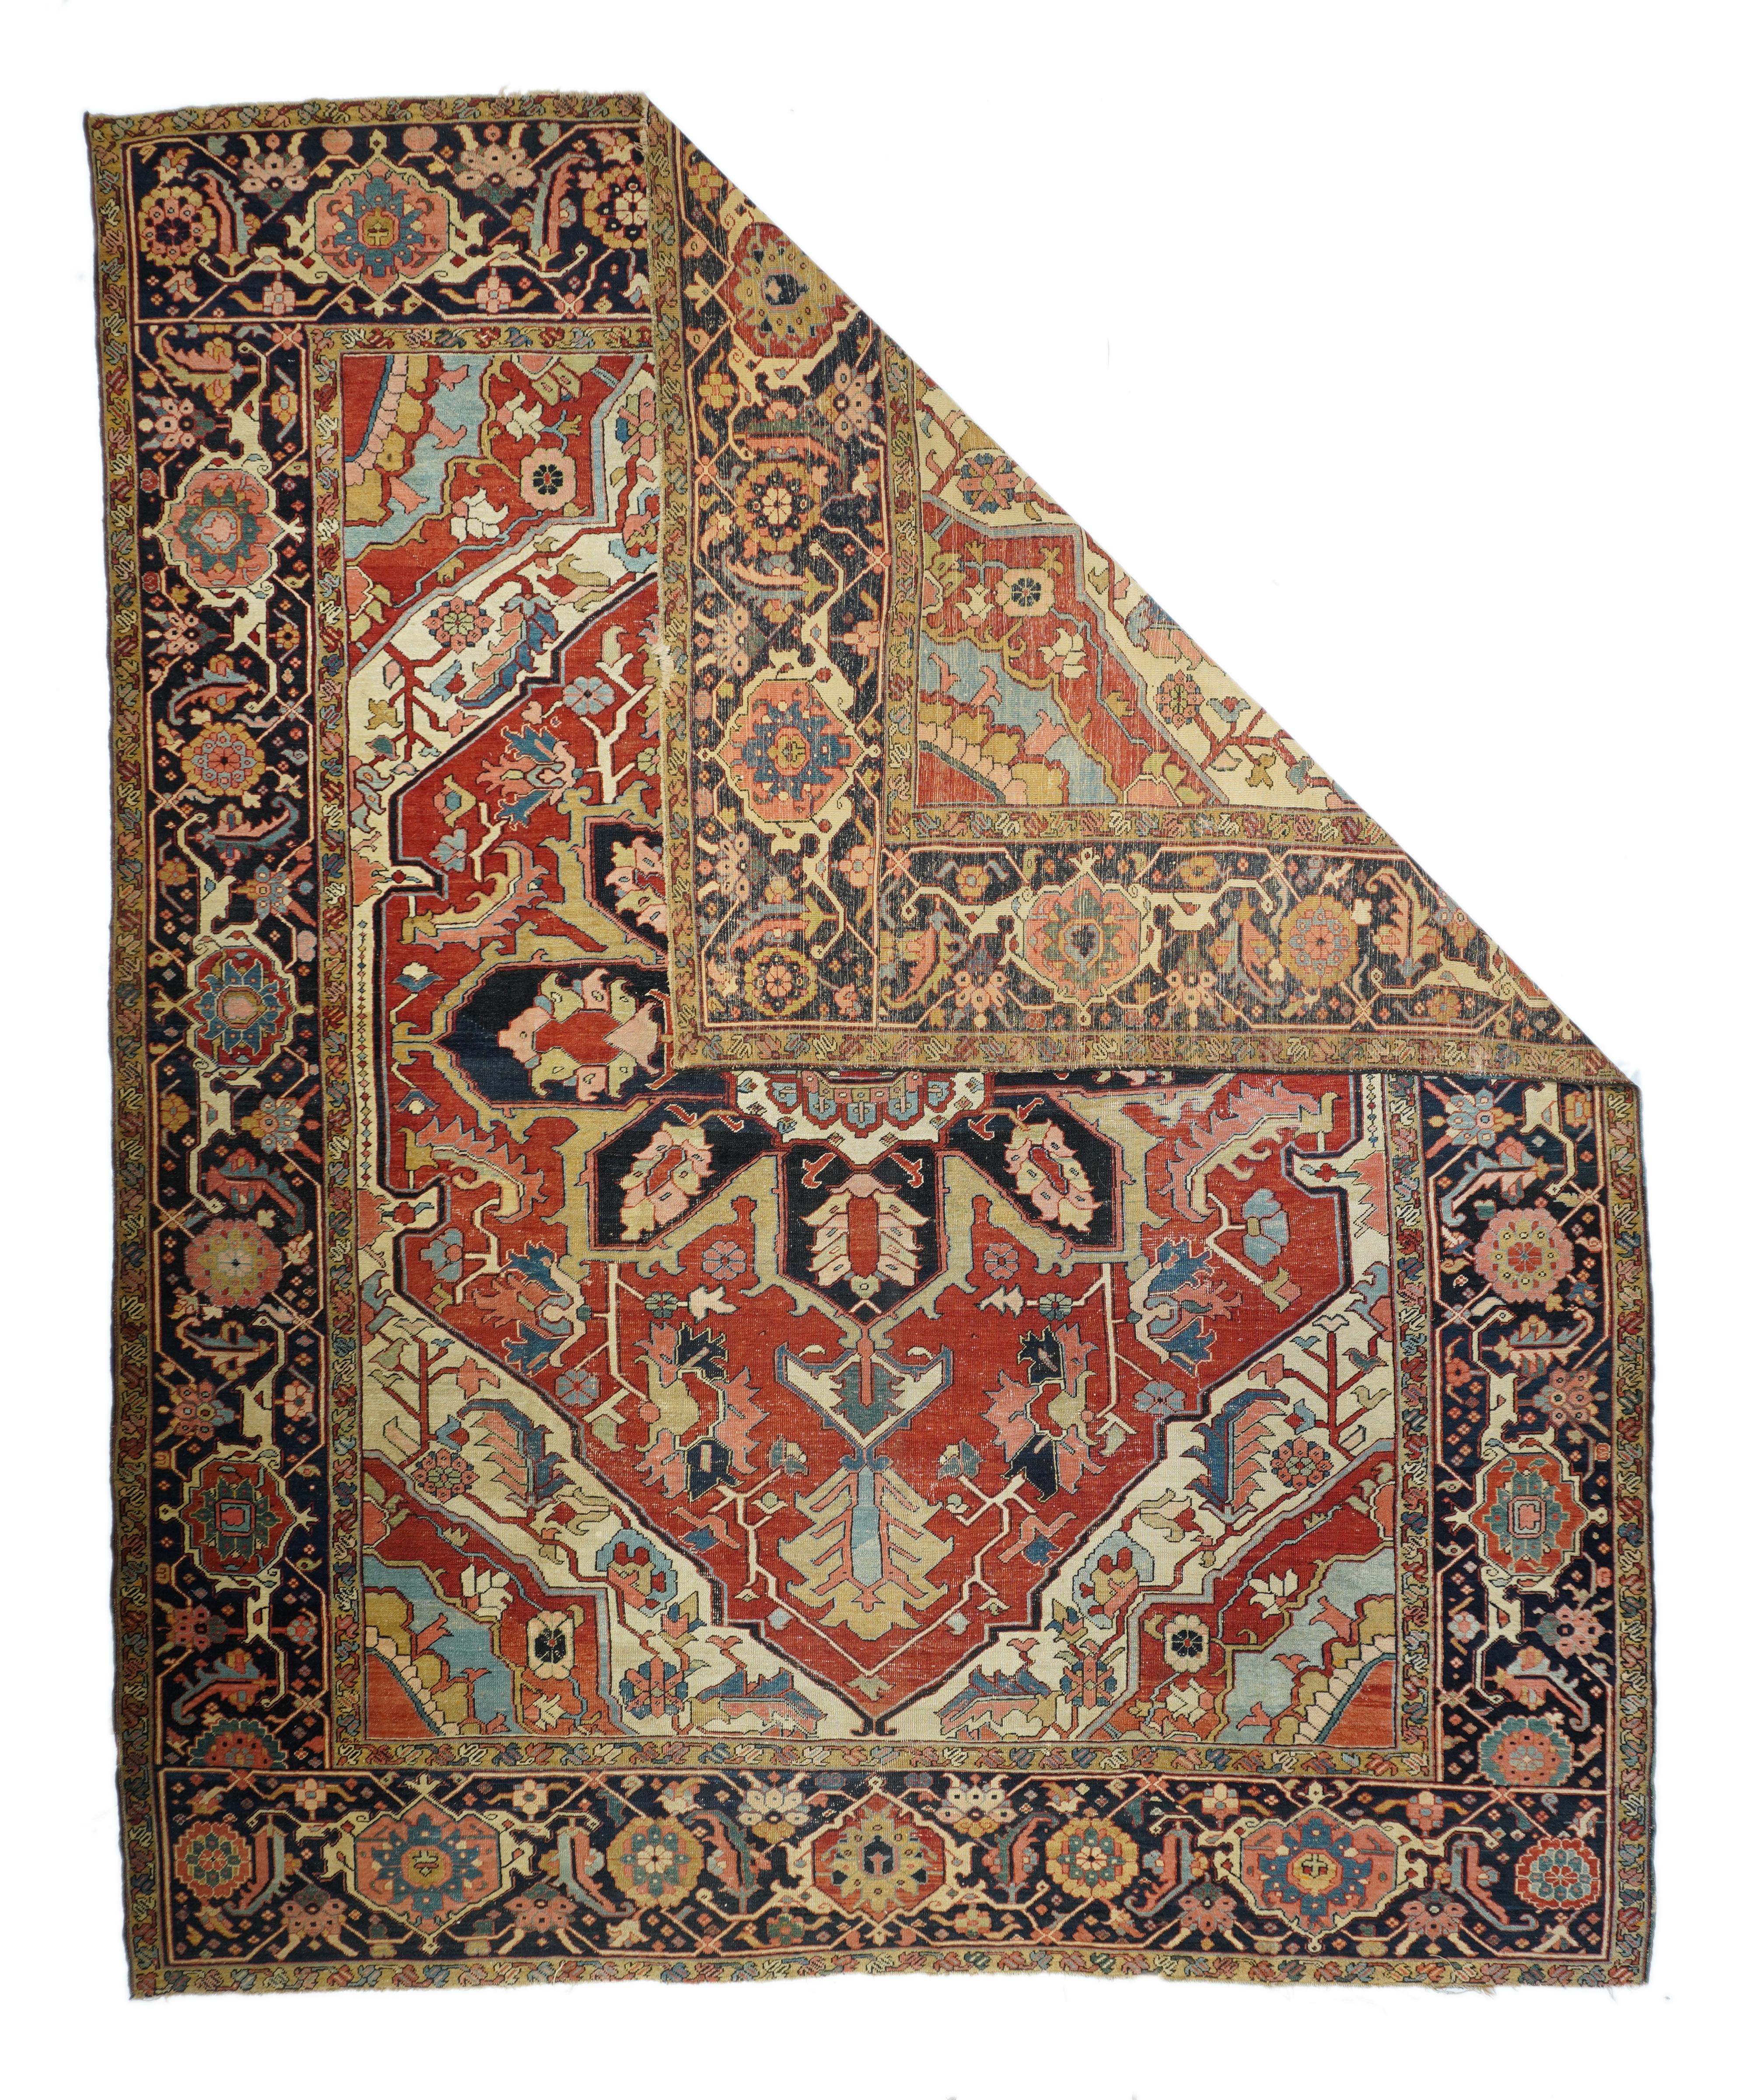 Antiker Serapi-Teppich 10' x 12'3''. Dieser antike nordwestpersische Dorfteppich zeigt die charakteristische Rot/Marine/Creme-Palette, die sich in einem gleichmäßigen Muster aus einem kräftigen marinefarbenen Oktofolienmedaillon mit acht Palmetten